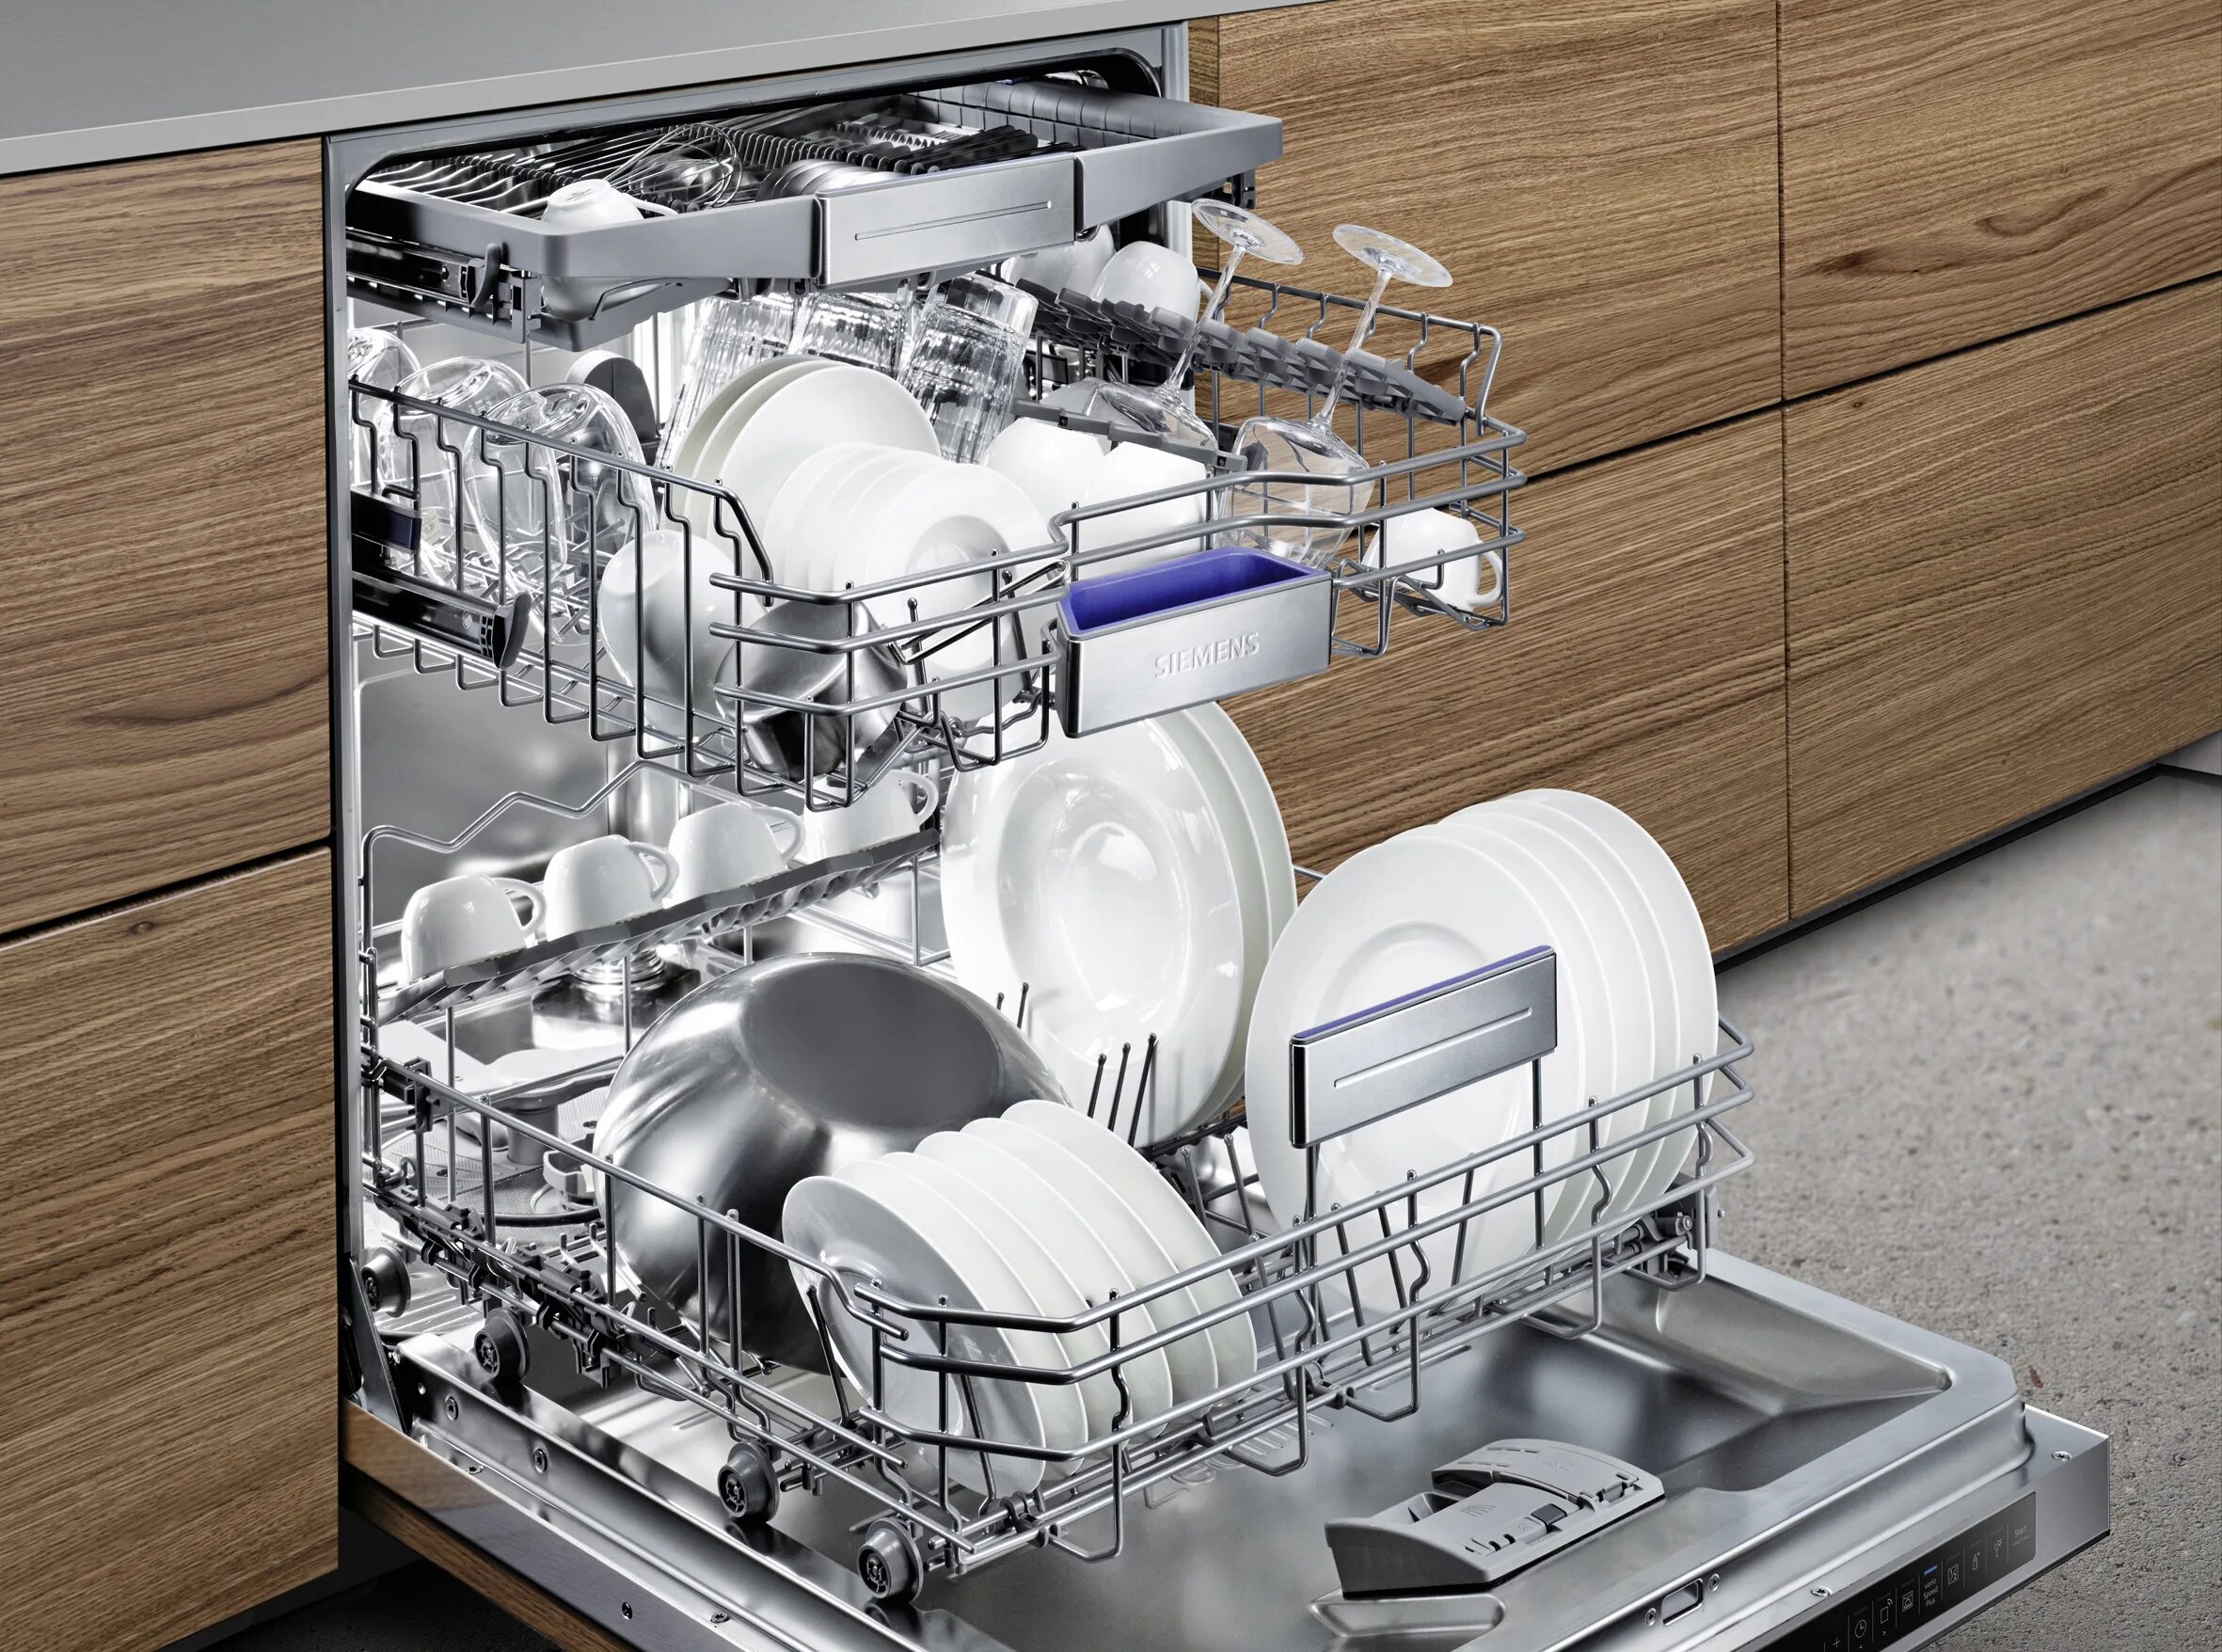 Встраиваемая посудомоечная машина Beko din 14 w13. Siemens iq700. МПТ-1700 посудомоечная машина. Российские посудомоечные машины